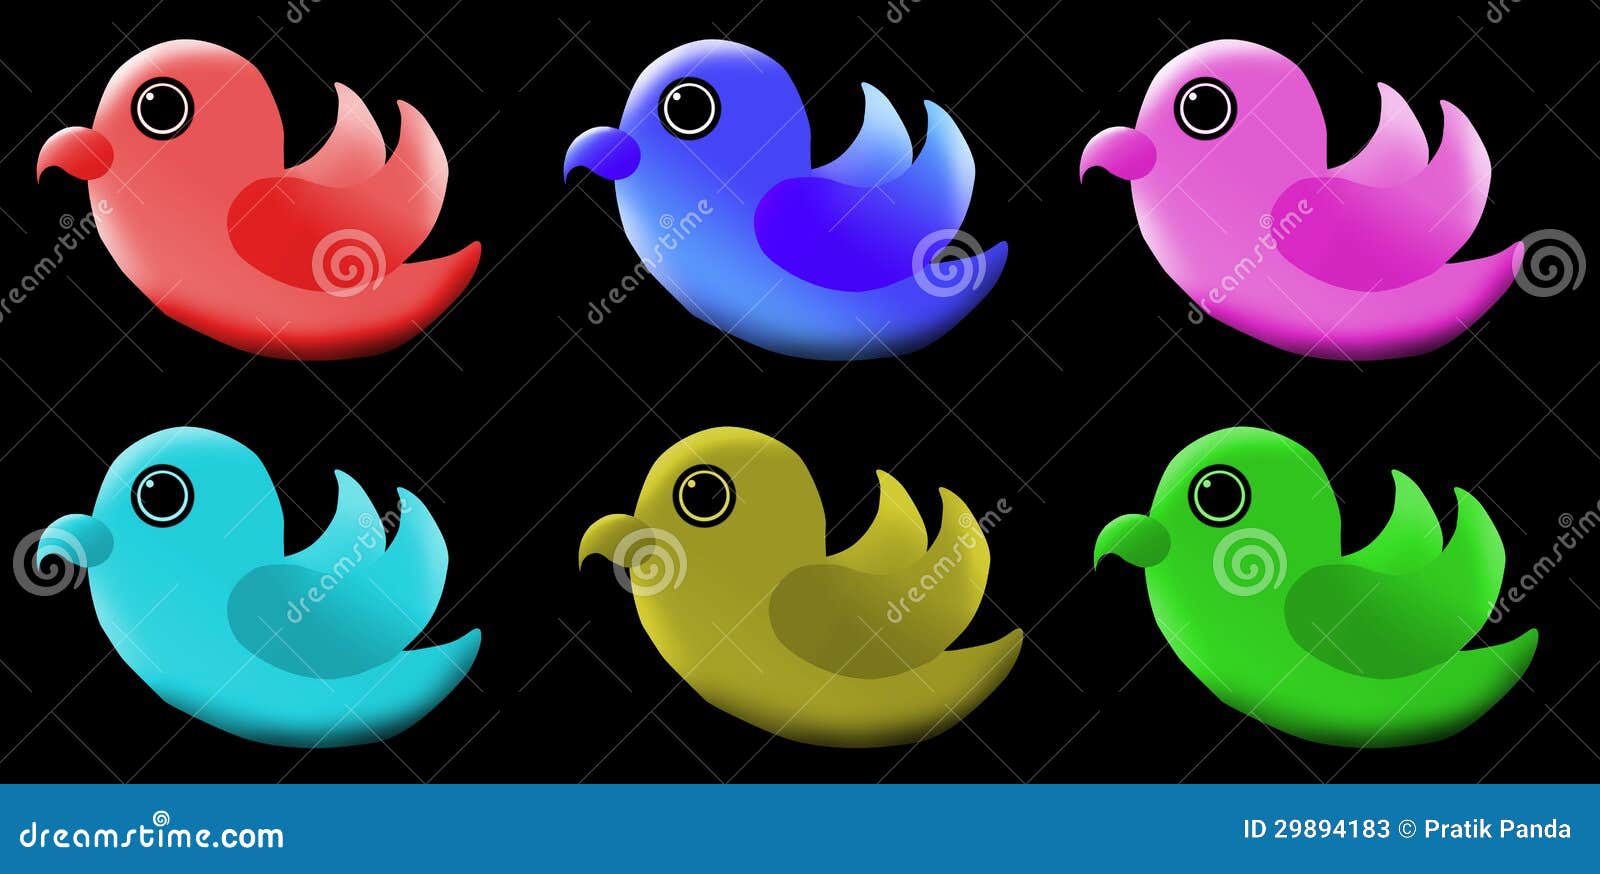 Đừng bỏ lỡ bức hình này với logo chim đáng yêu như một con chim con đang vỗ cánh, một cách đáng yêu và rất đặc biệt!